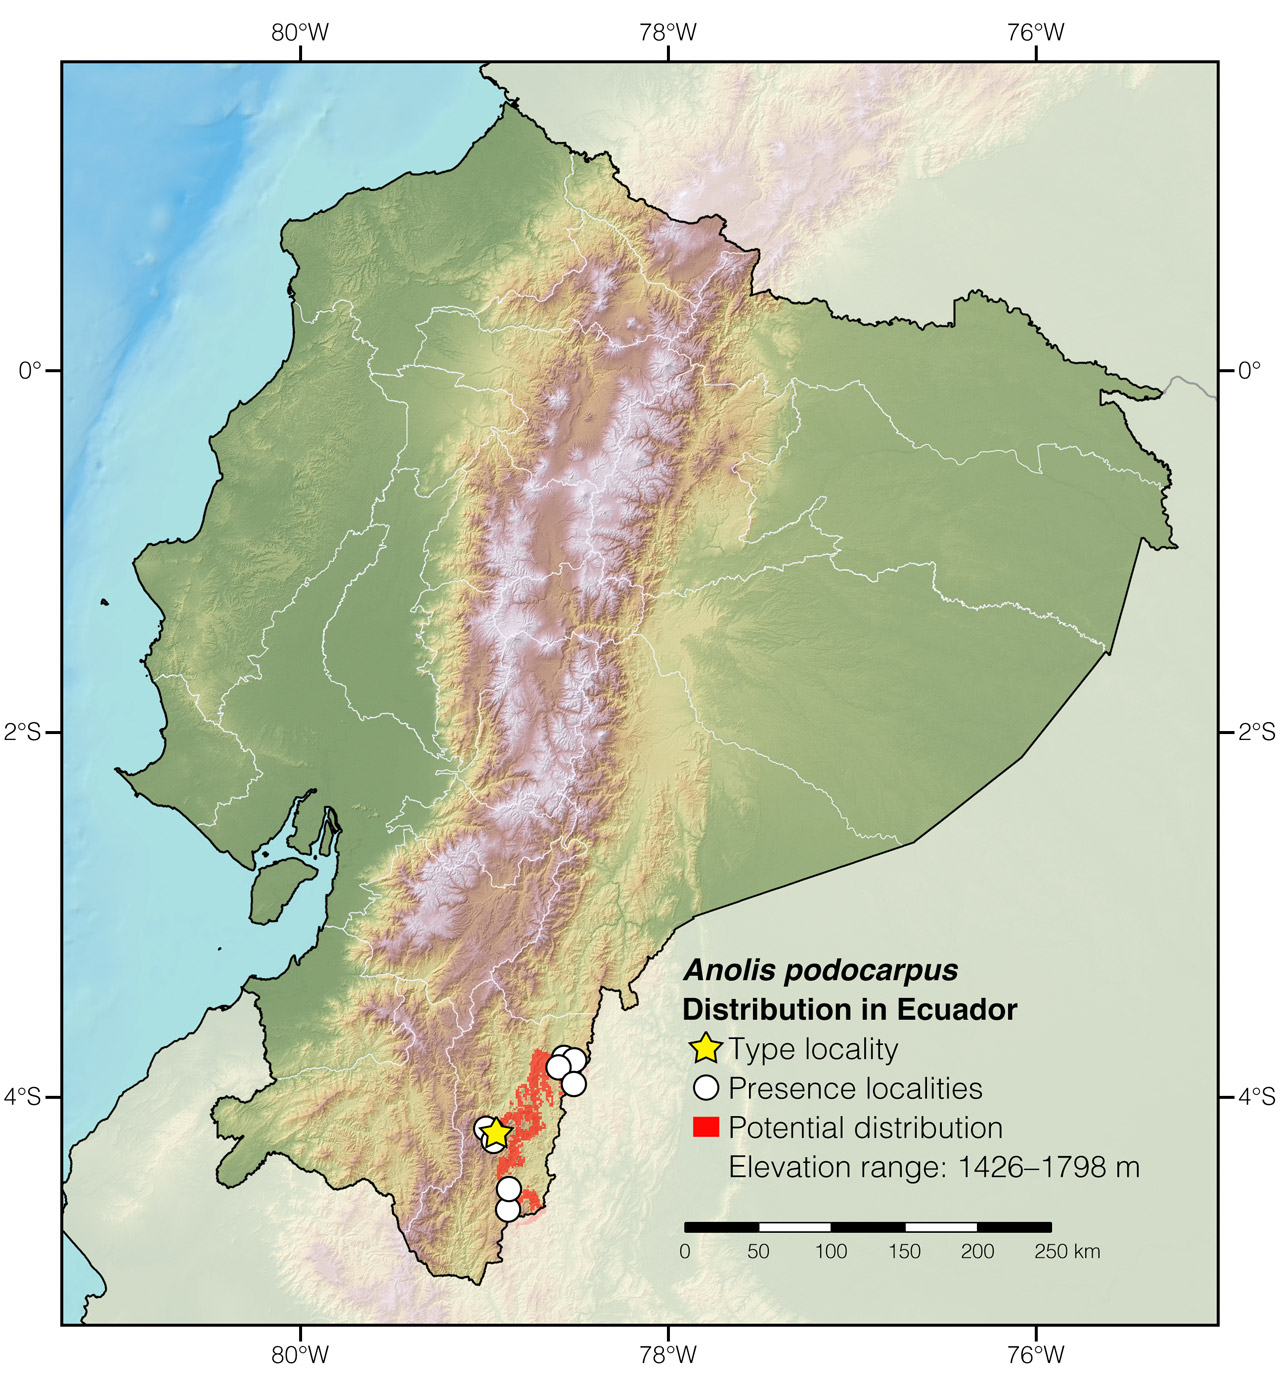 Distribution of Anolis podocarpus in Ecuador